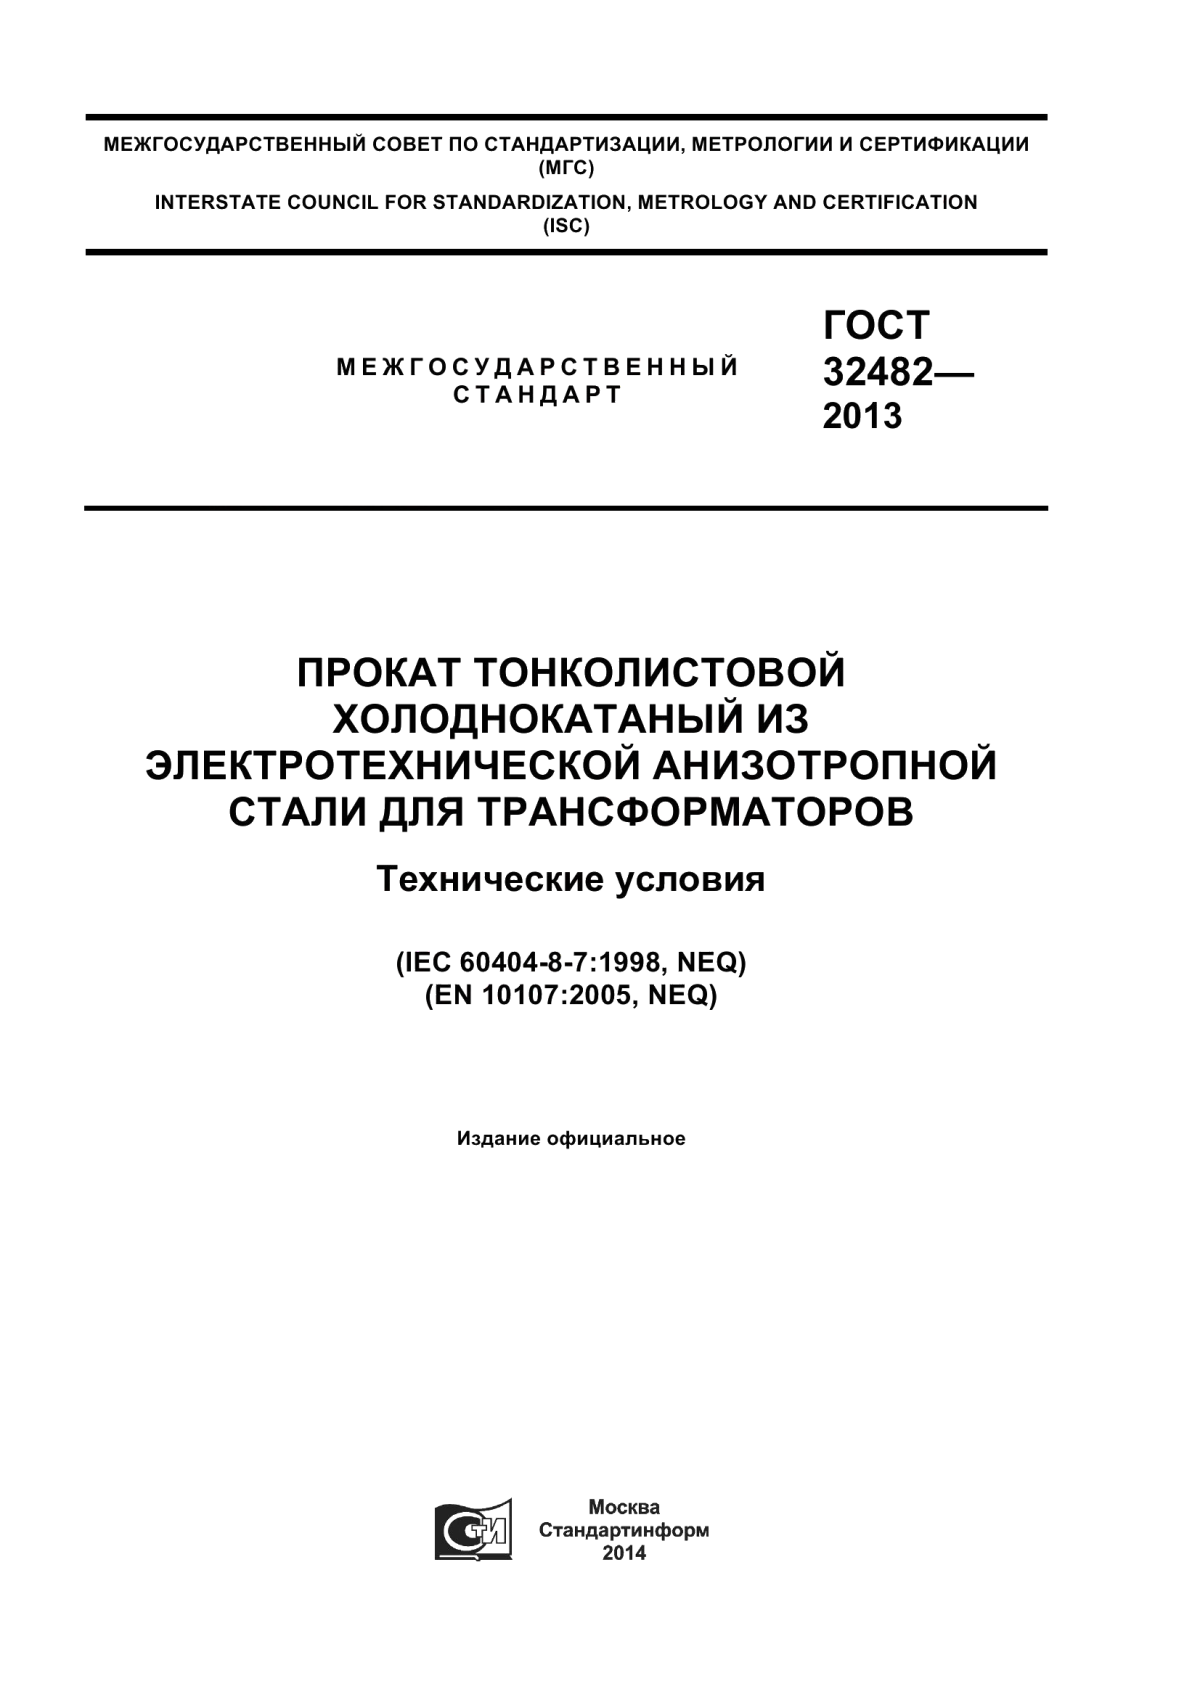 ГОСТ 32482-2013 Прокат тонколистовой холоднокатаный из электротехнической анизотропной стали для трансформаторов. Технические условия